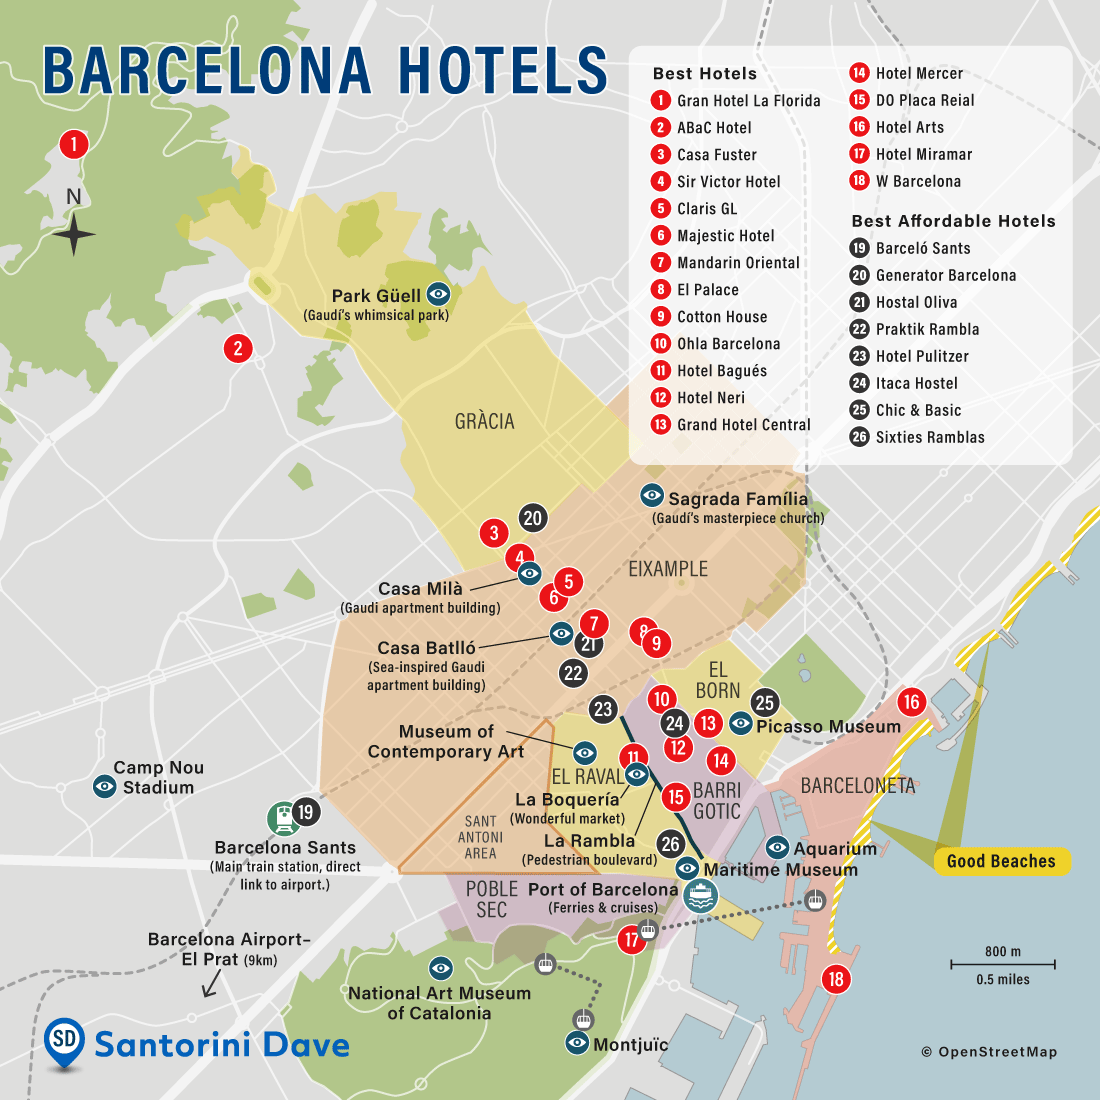 Map of Barcelona hotels and neighborhoods.